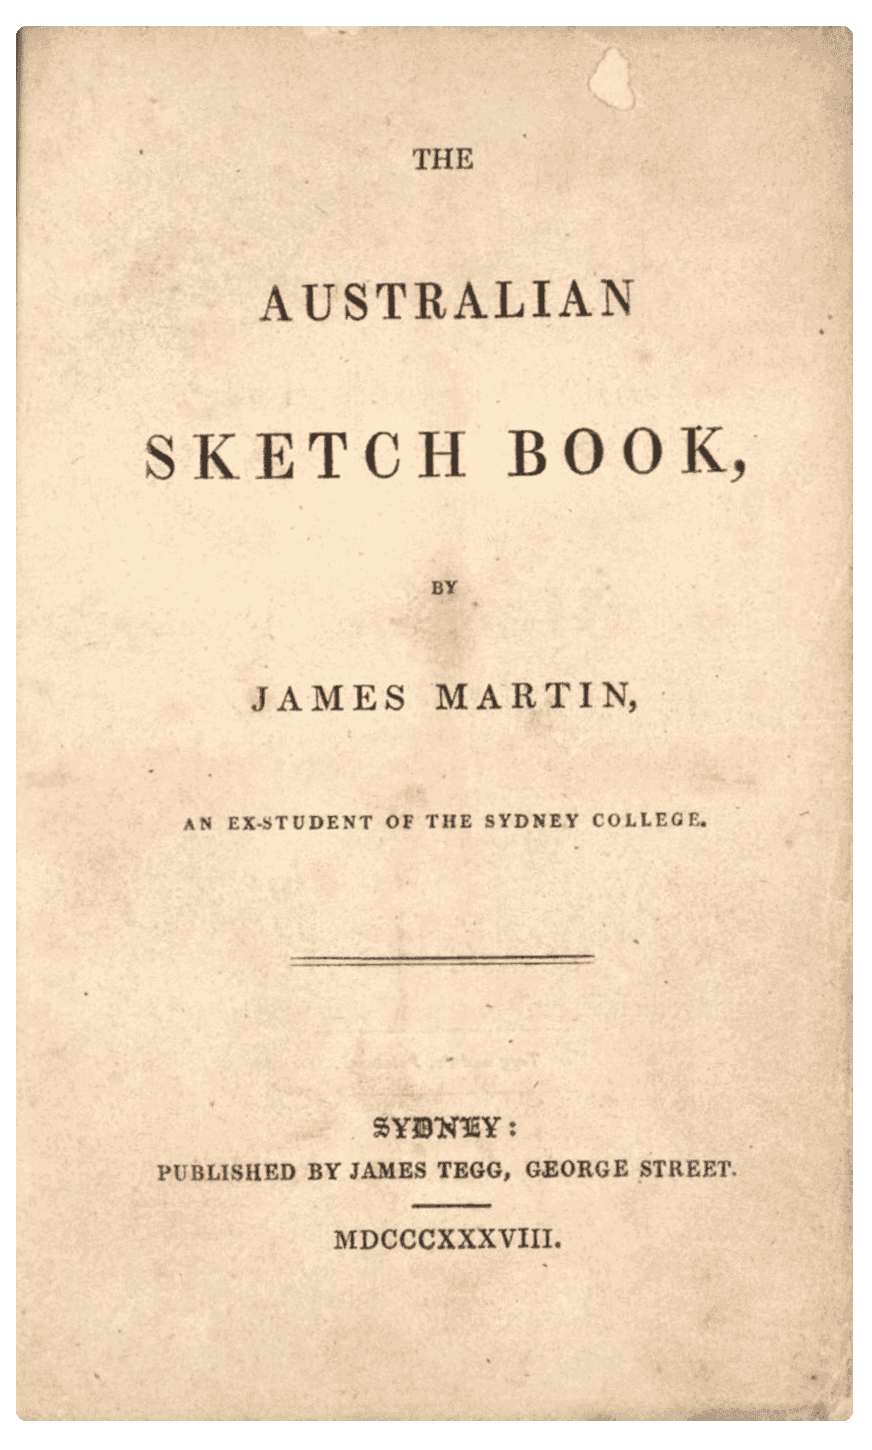 James Martin book